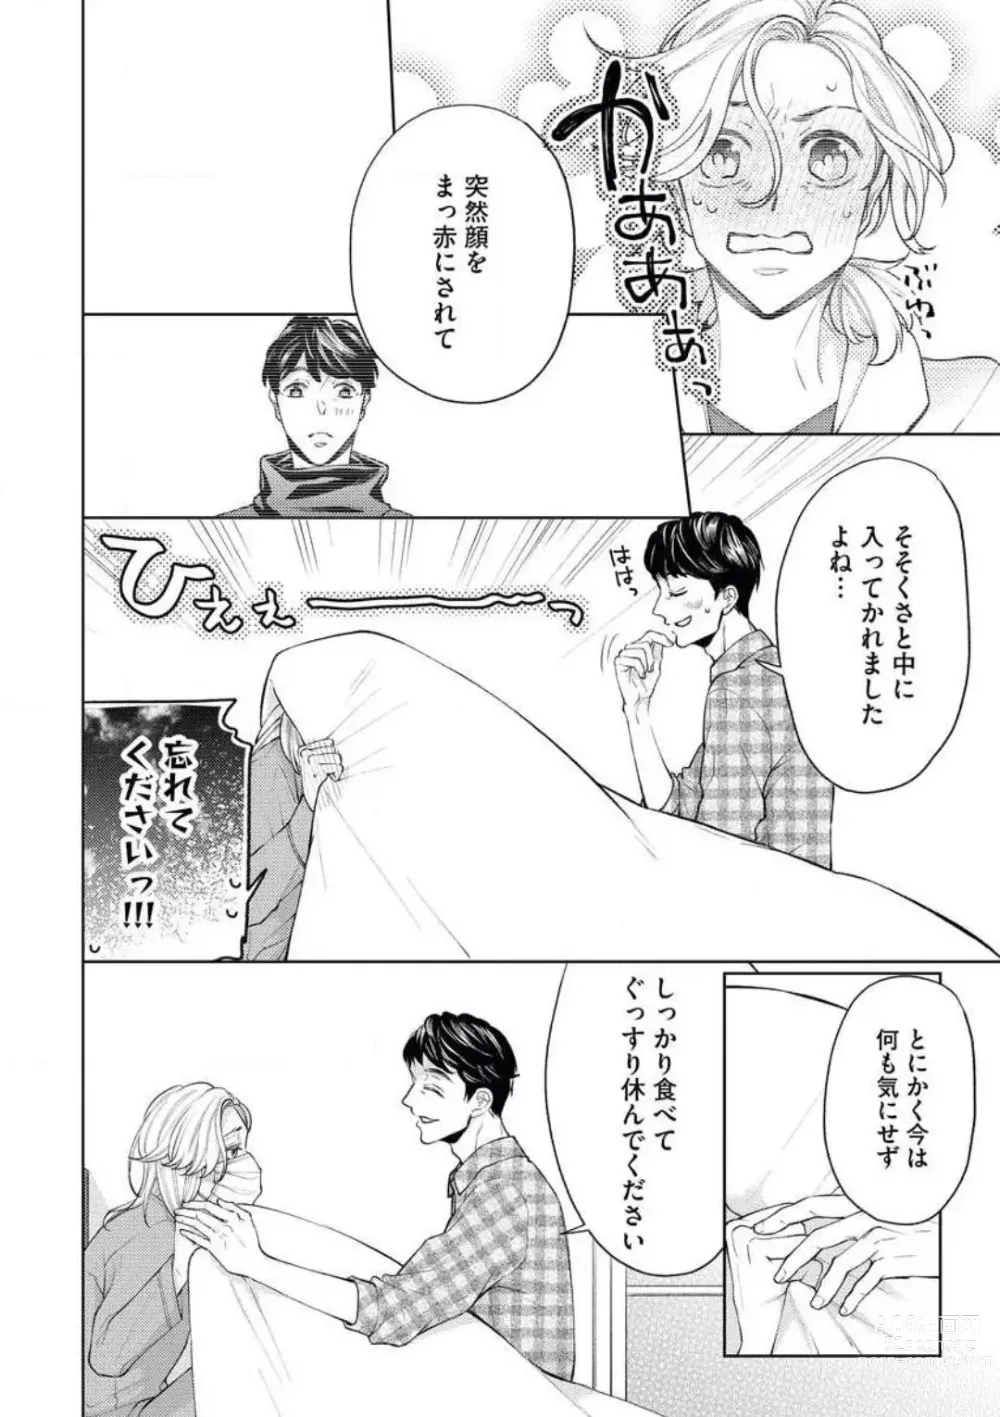 Page 14 of manga Anata o Kudasai!